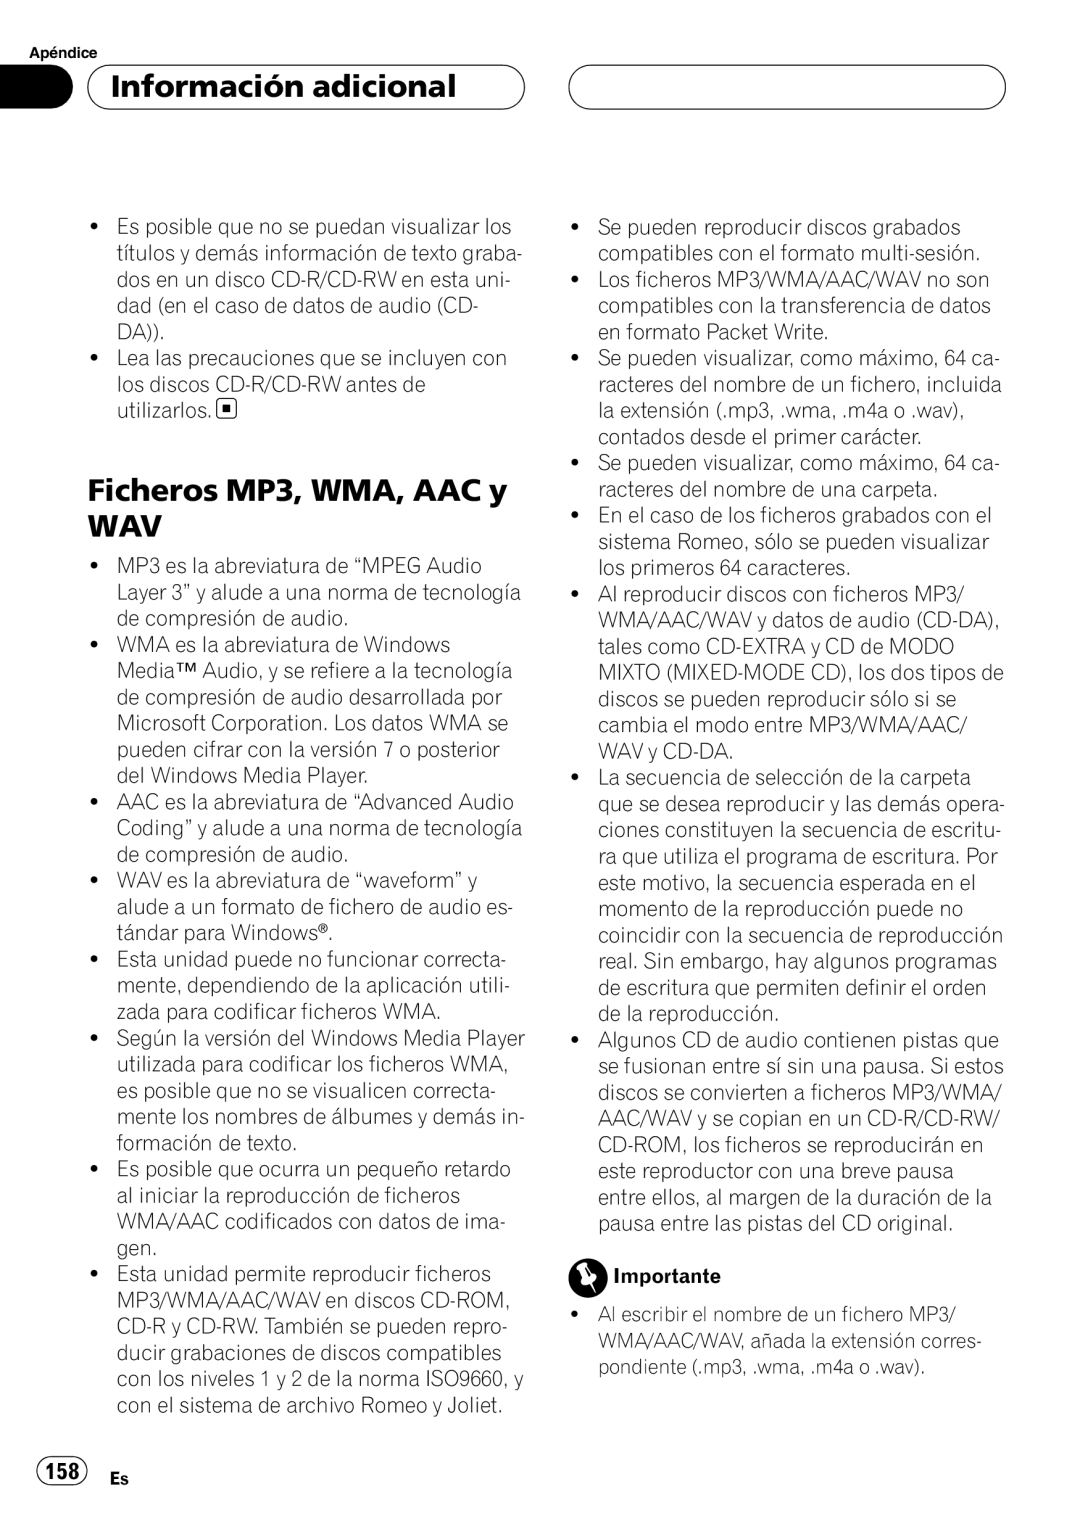 Pioneer DEH-P80RS operation manual Ficheros MP3, WMA, AAC y WAV, 158 Es, Información adicional 